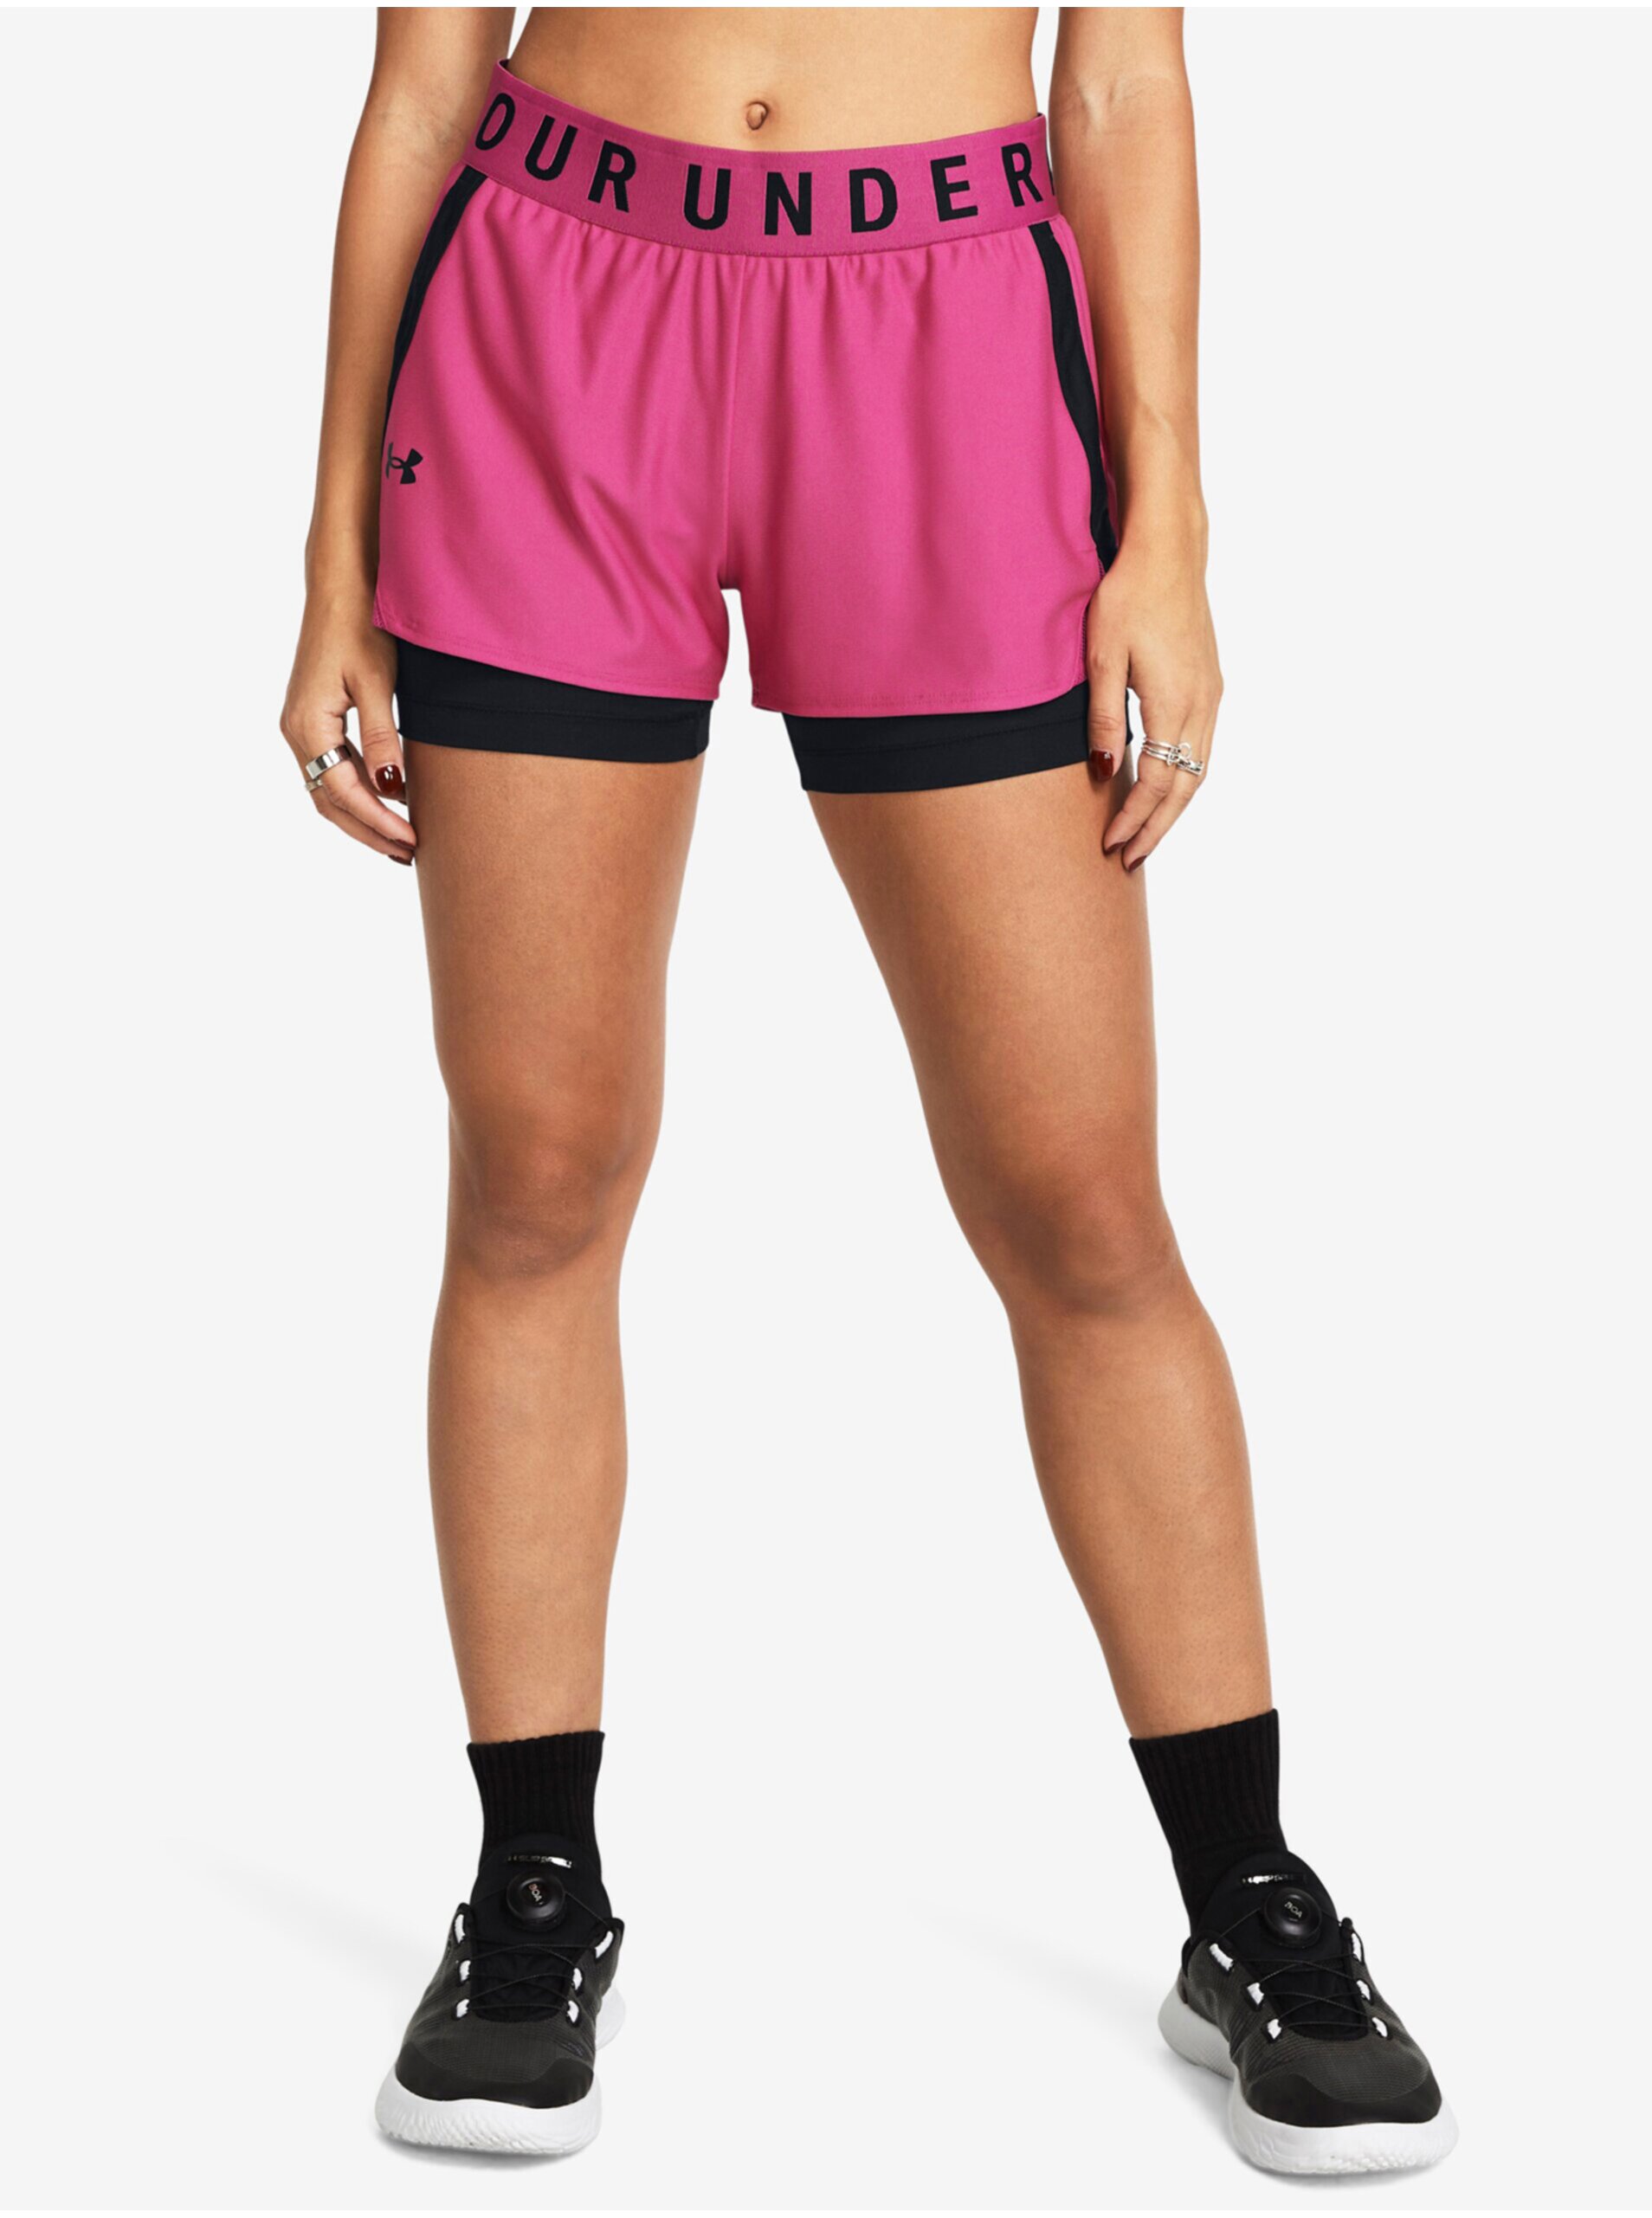 E-shop Černo-růžové dámské sportovní kraťasy Under Armour Play Up 2-in-1 Shorts